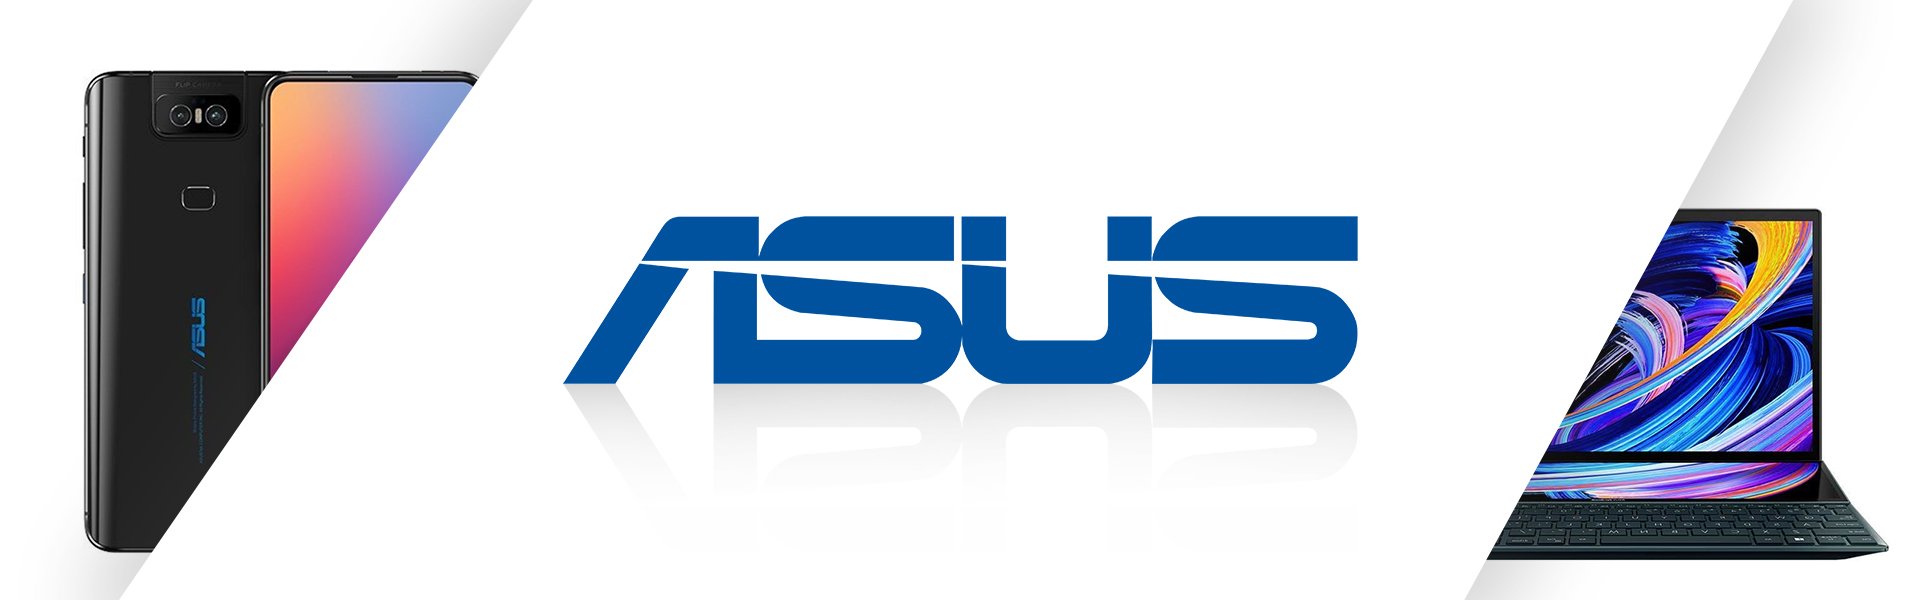 Asus E210M Intel Celeron 4GB 64GB 11.6 Inch Windows 10 Asus 